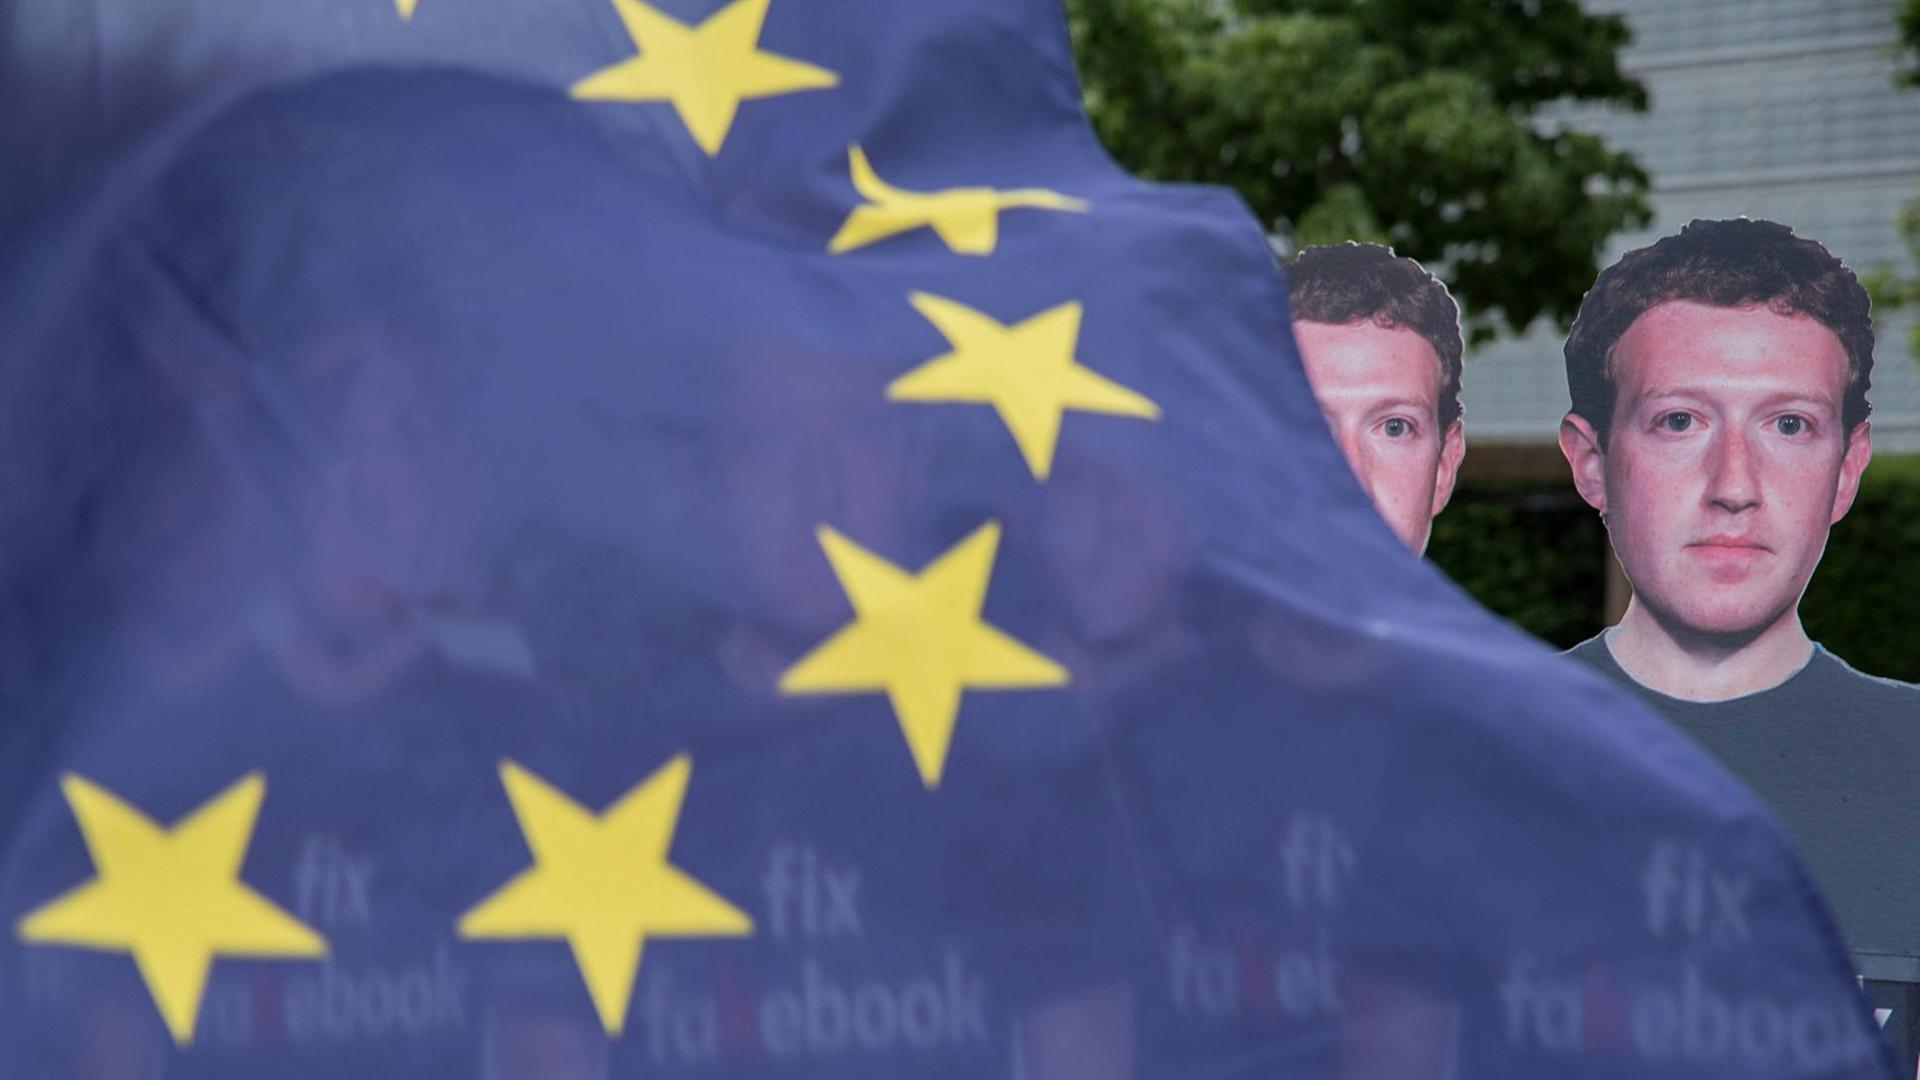 Eine EU-Flagge weht vor mehreren Pappaufstellern von Facebook-Chef Mark Zuckerberg